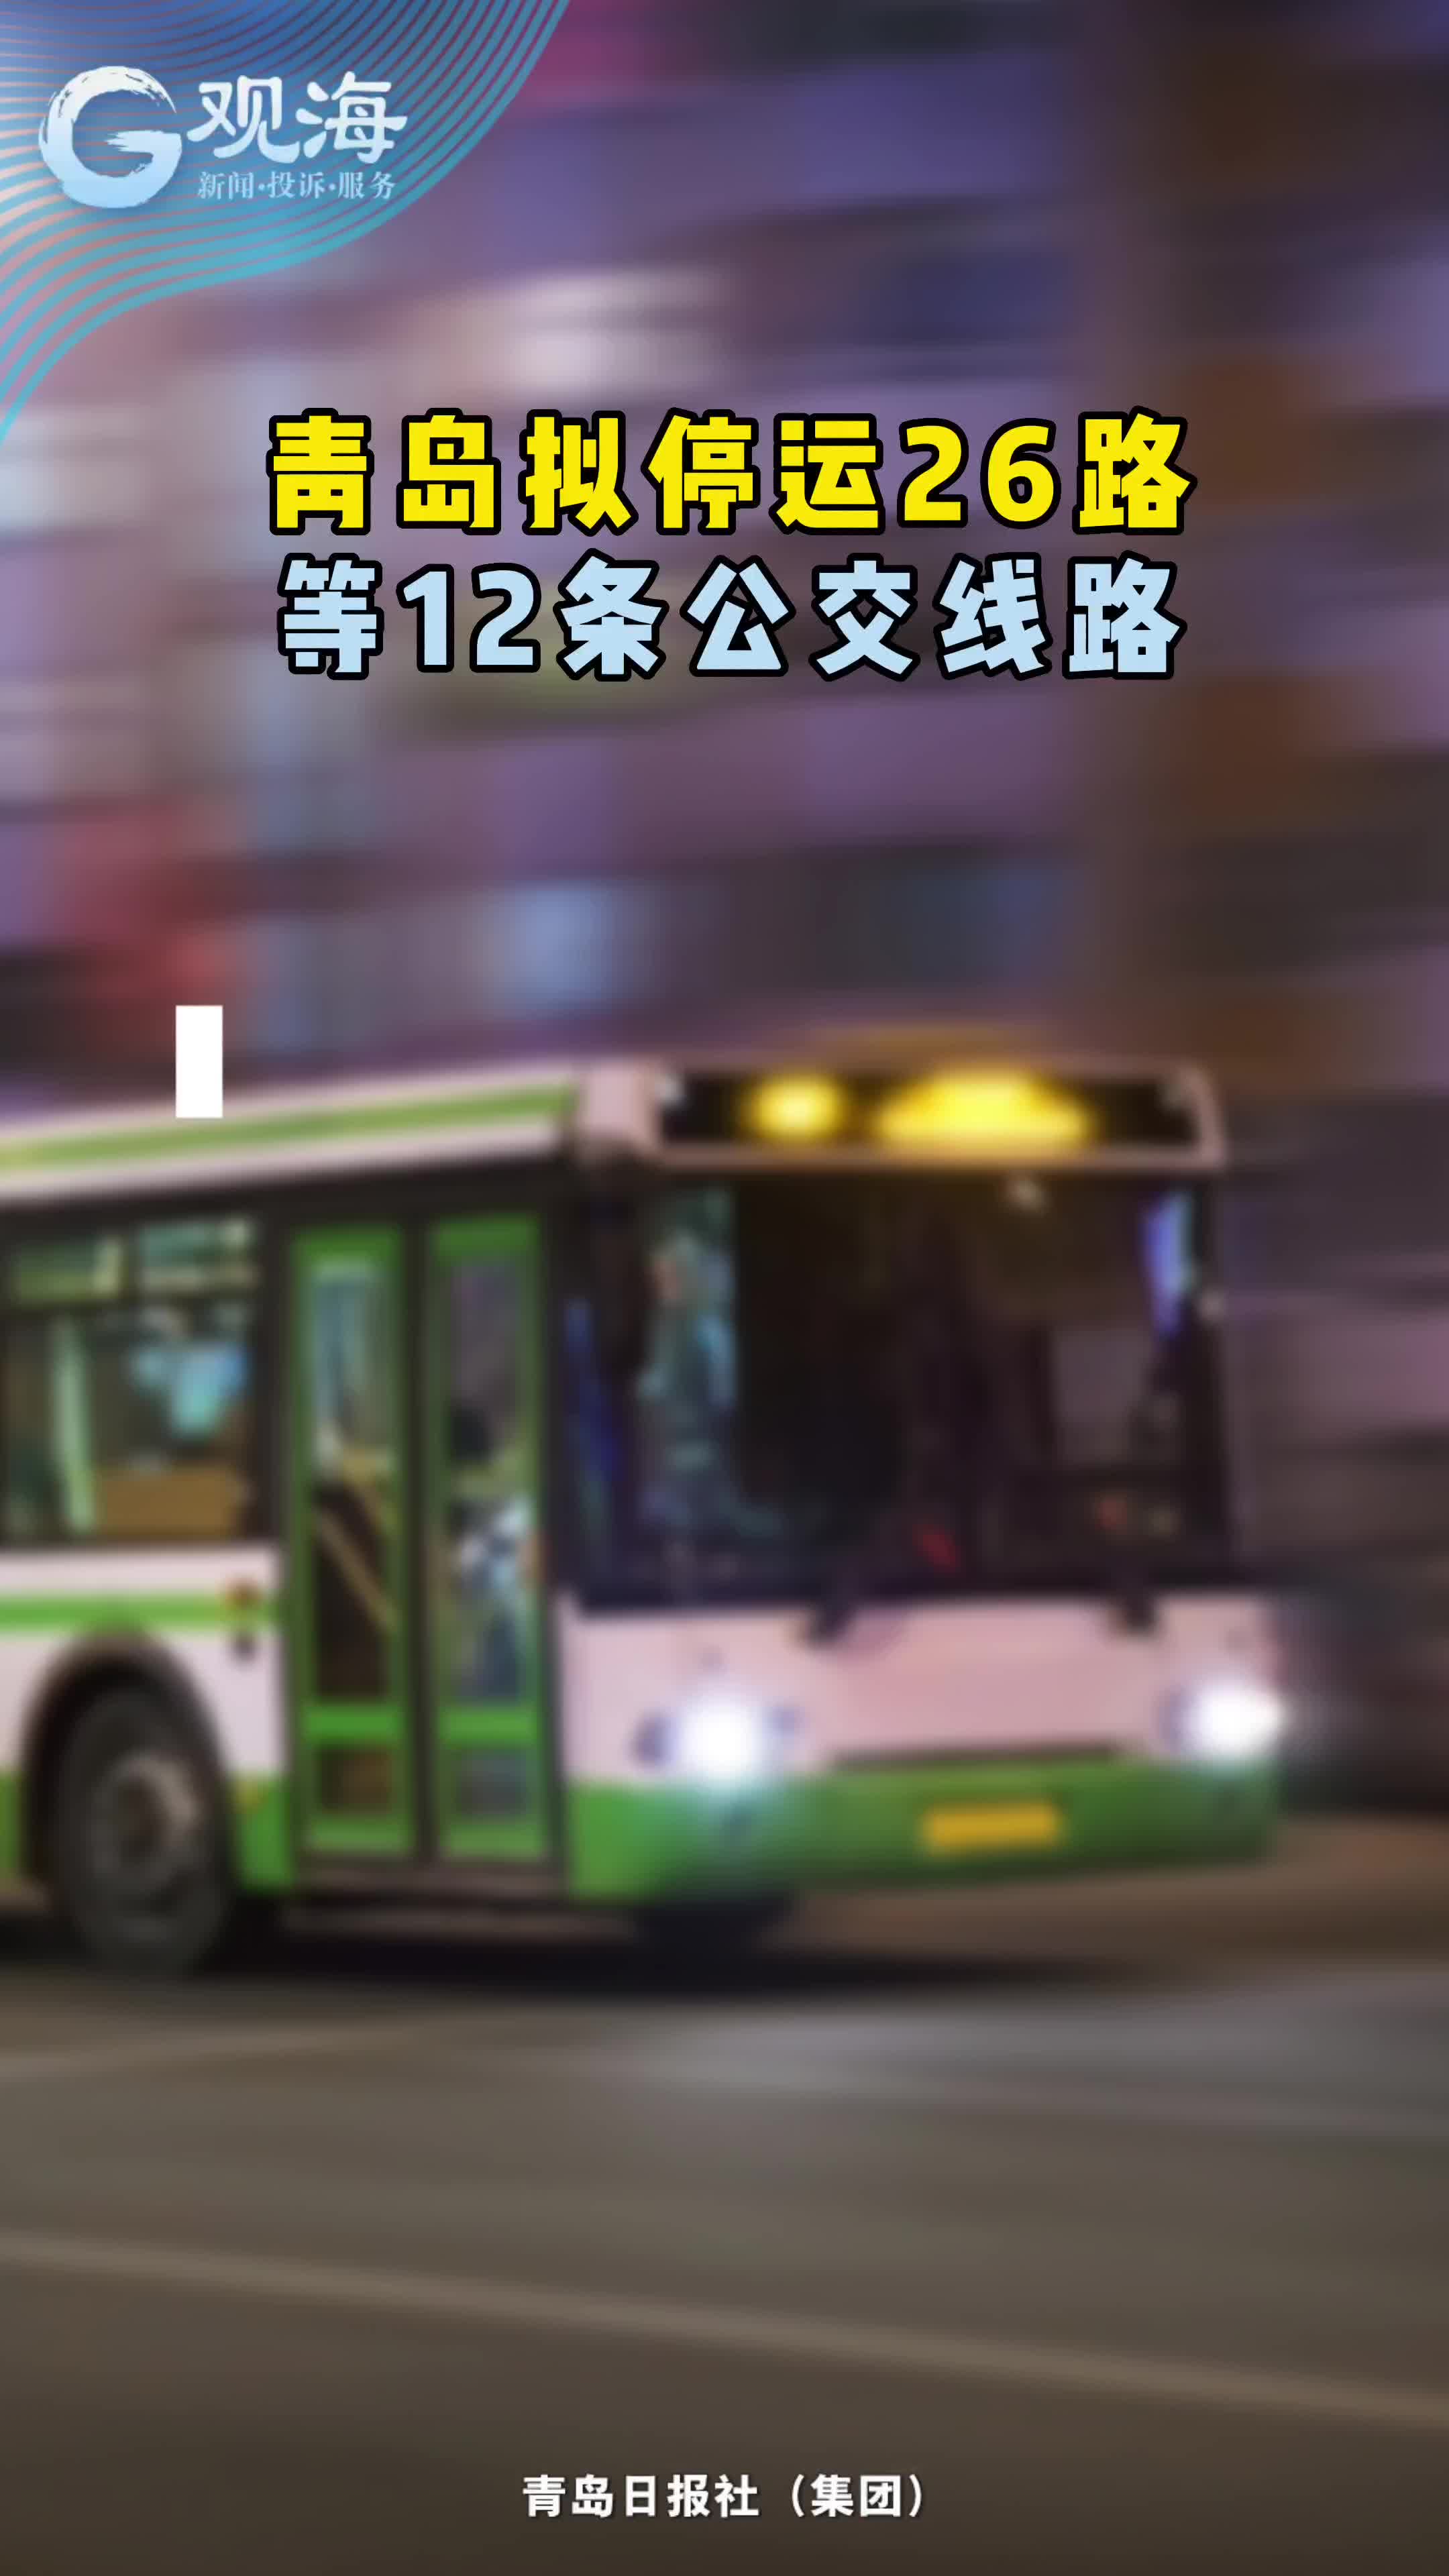 青岛拟停运26路等12条公交线路